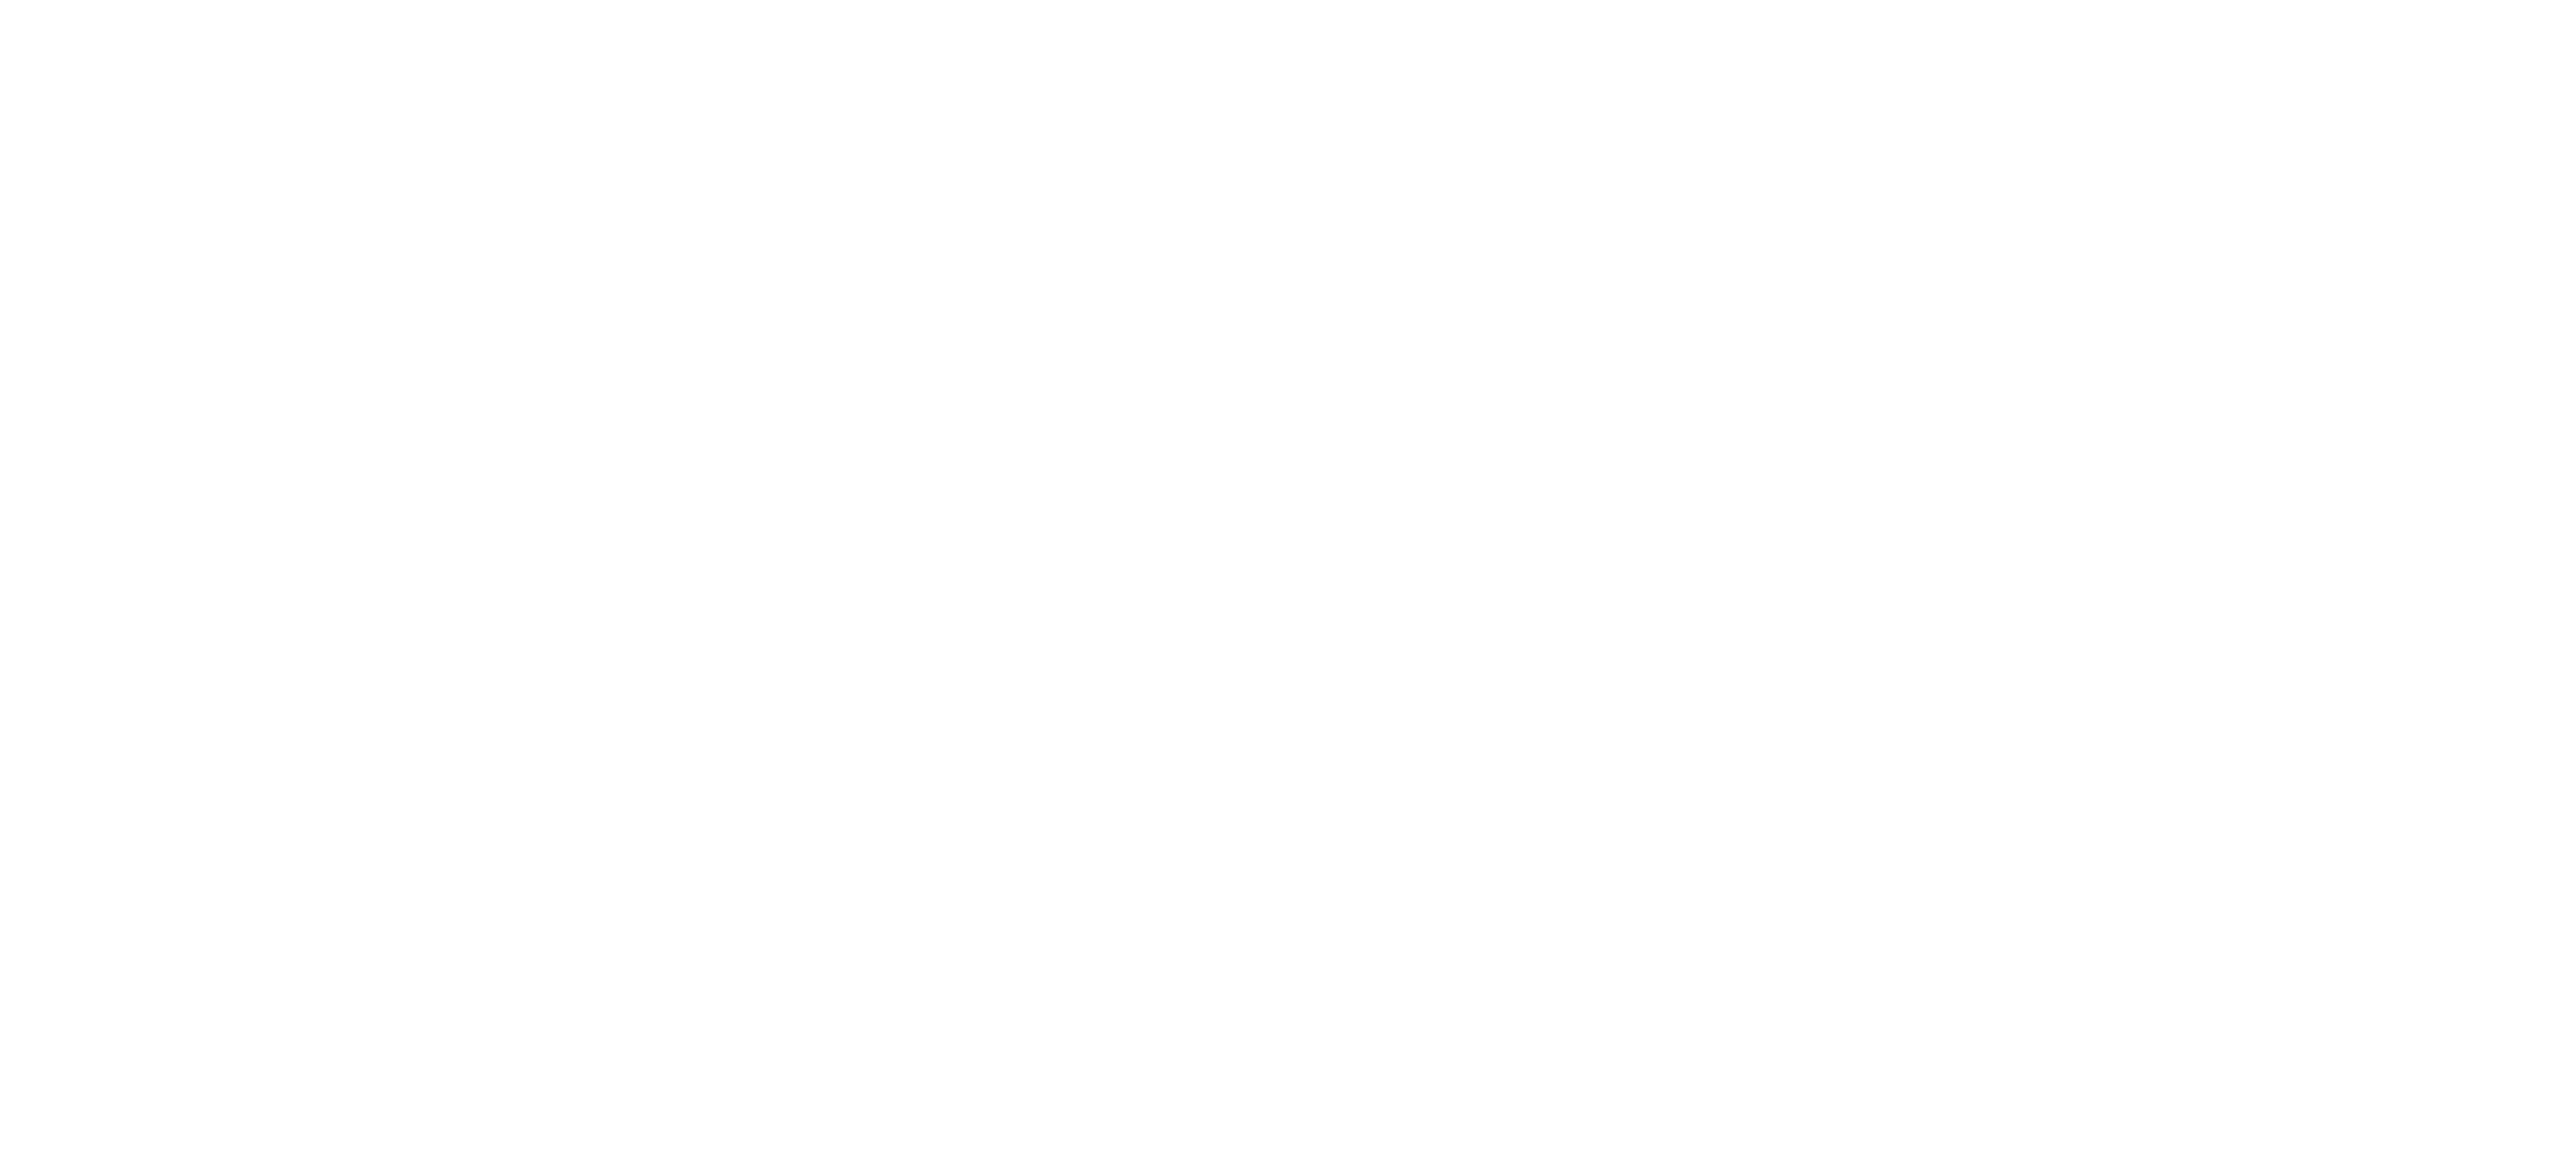 Krauss Maschinen GmbH